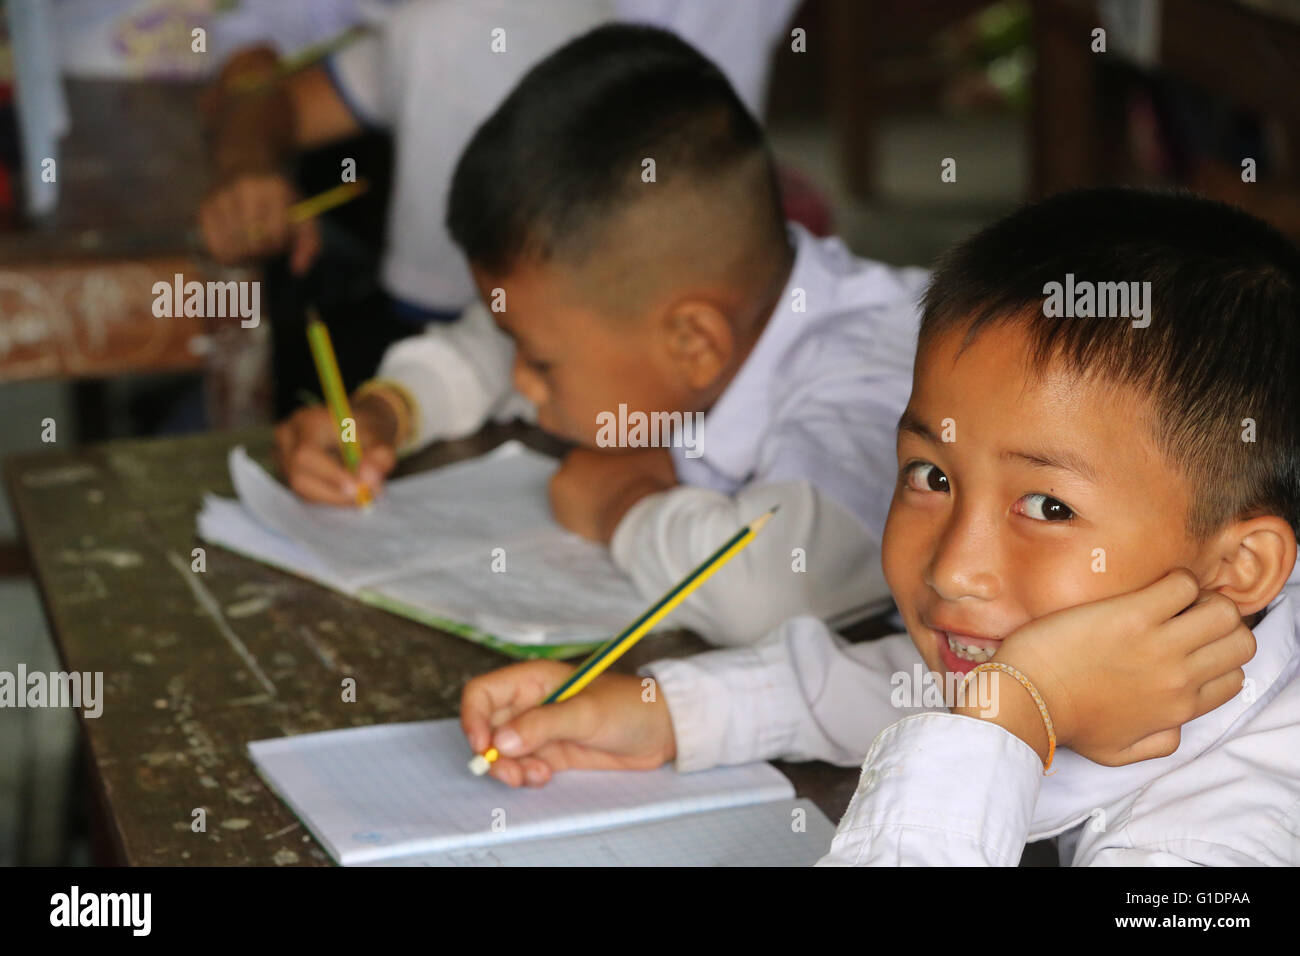 L'école primaire. Les élèves en classe. Vang Vieng. Le Laos. Banque D'Images